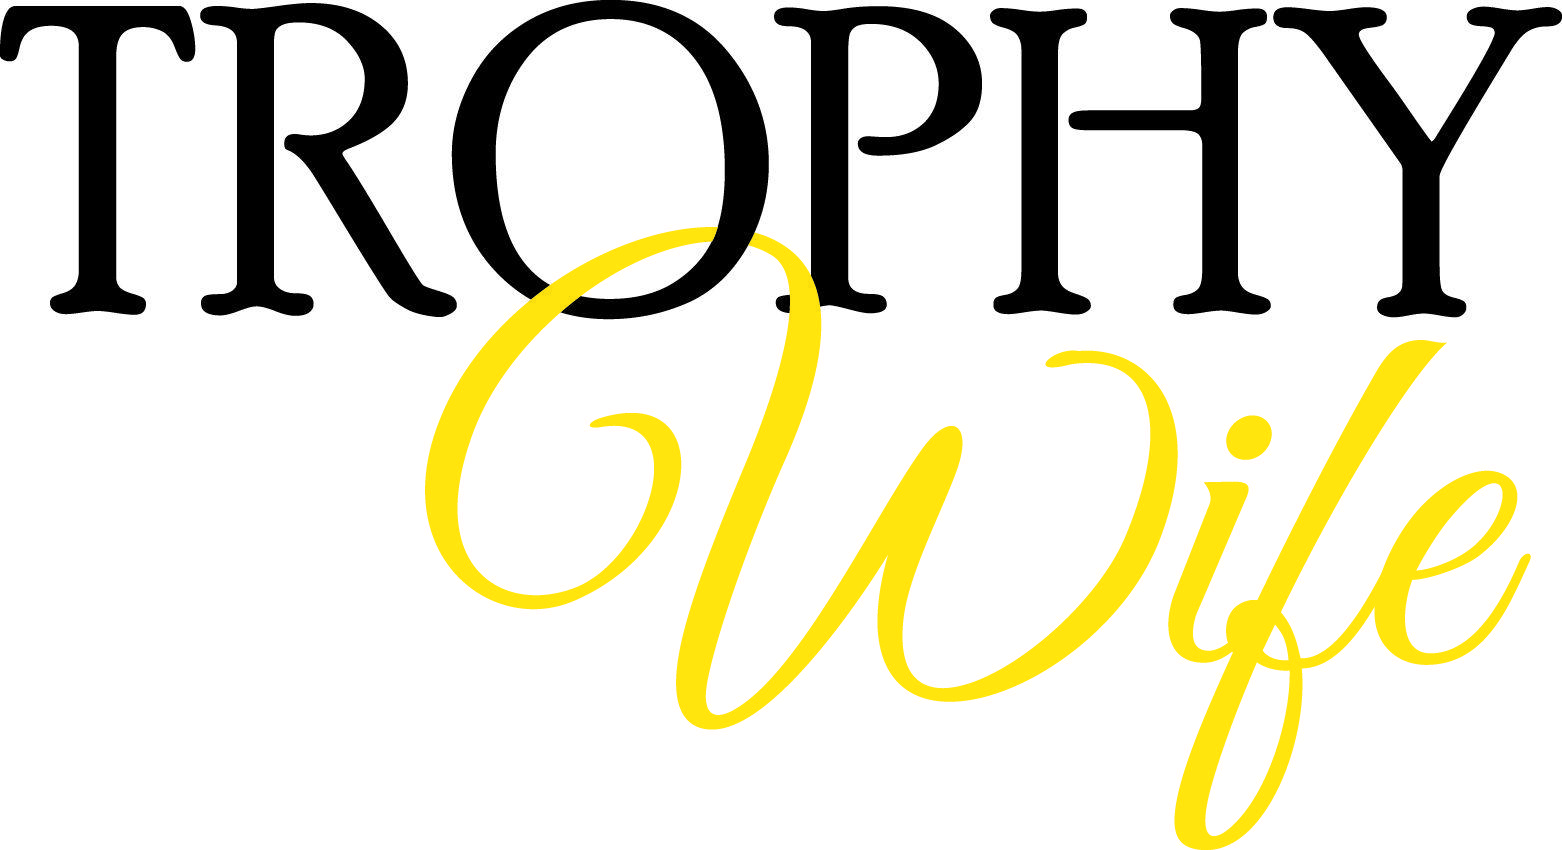 Wife Logo - Trophy Wife (ABC) Logo